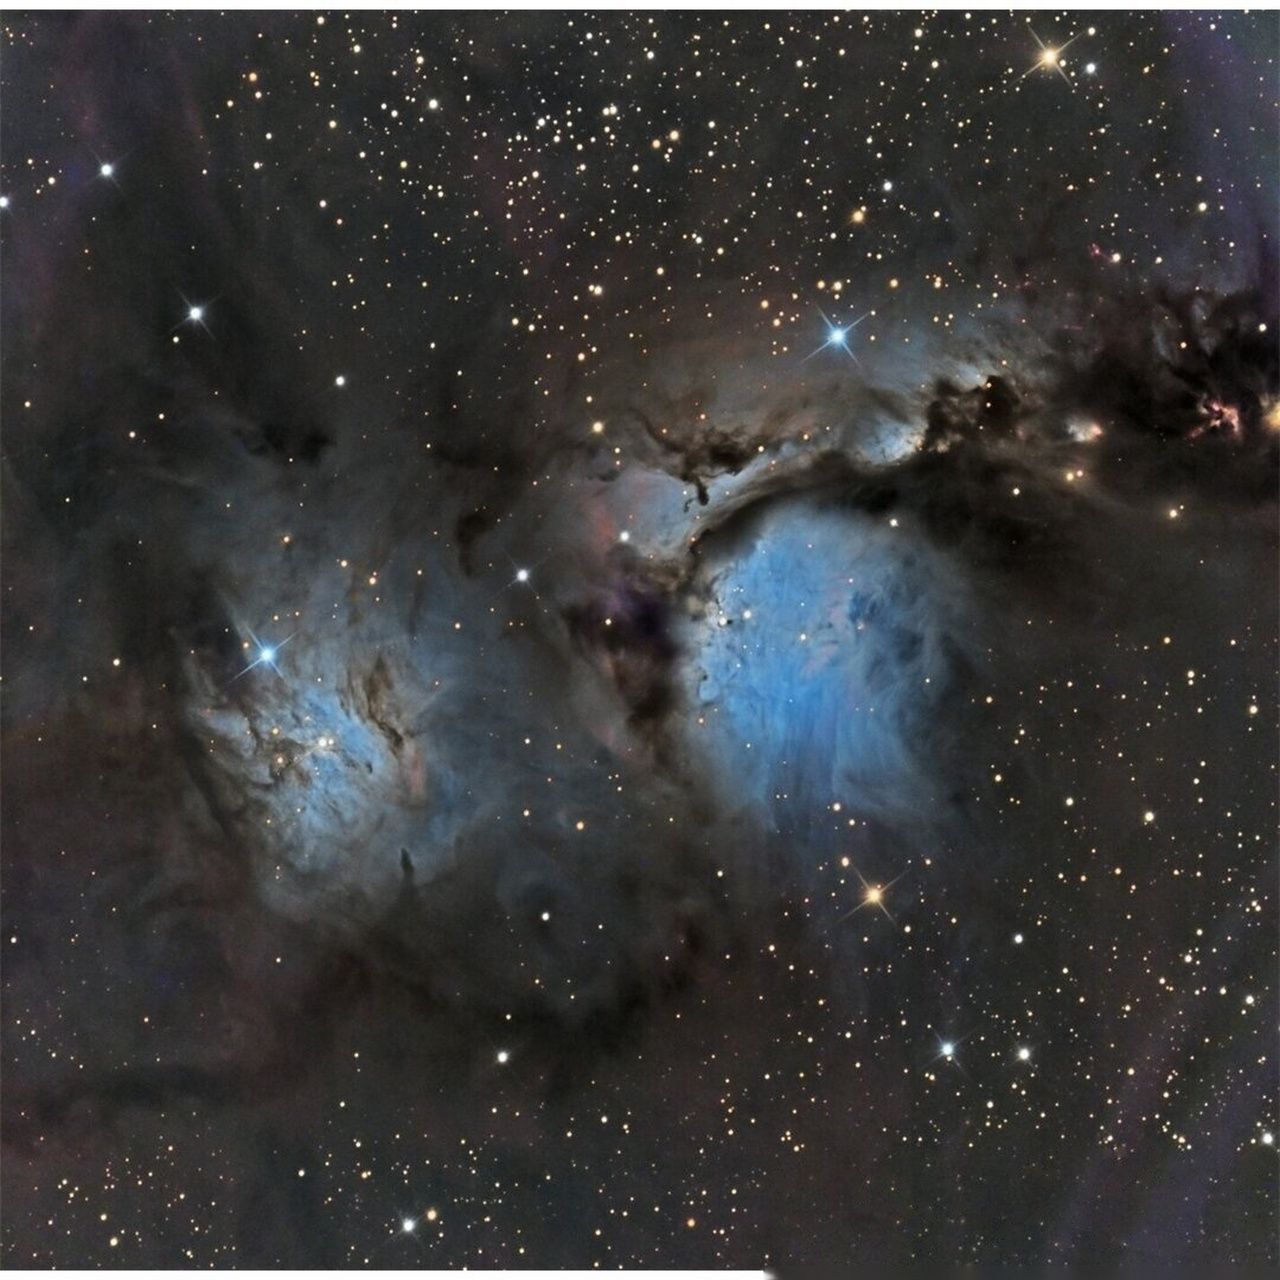 m78星云的样子图片